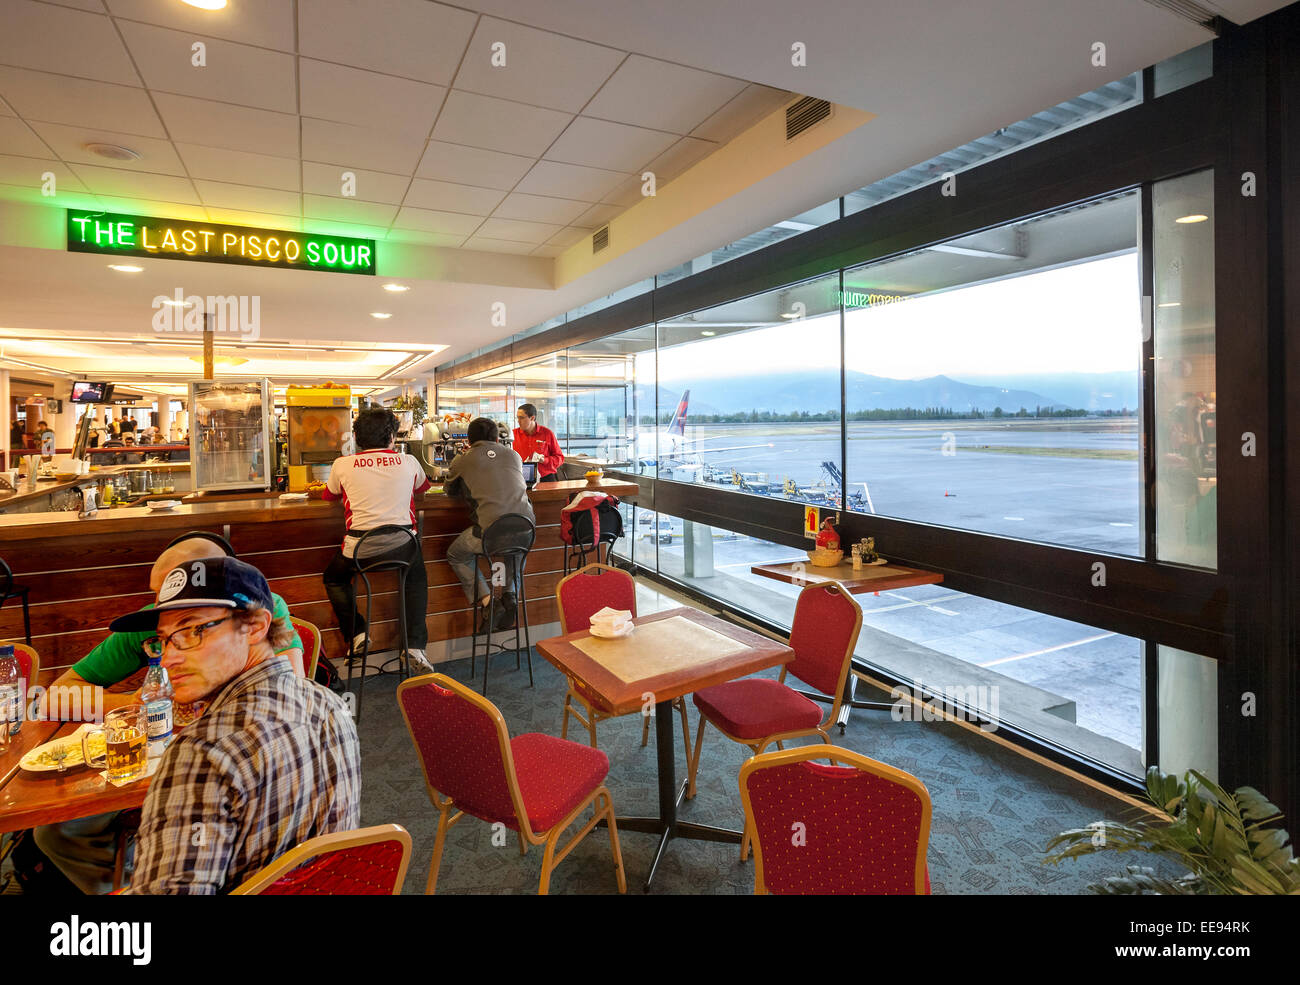 Santiago de Chile. Il bar ristorante dell'ultimo Pisco Sour nel Arturo Merino Benitez International Airport. Foto Stock